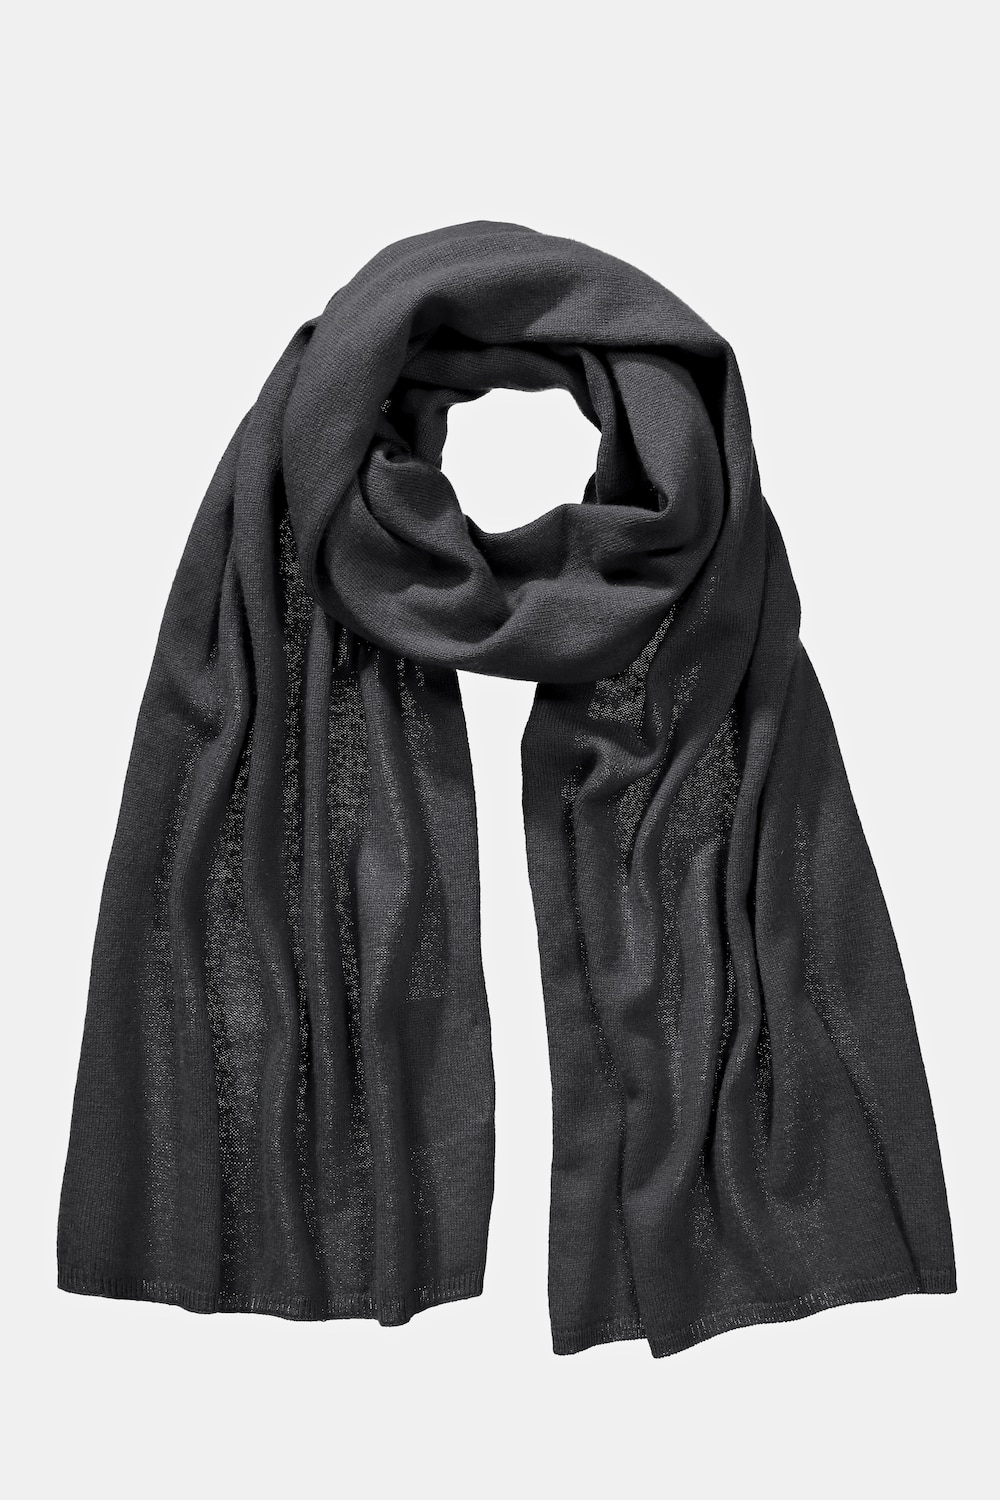 Große Größen Schal, Damen, schwarz, Größe: One Size, Wolle, Ulla Popken